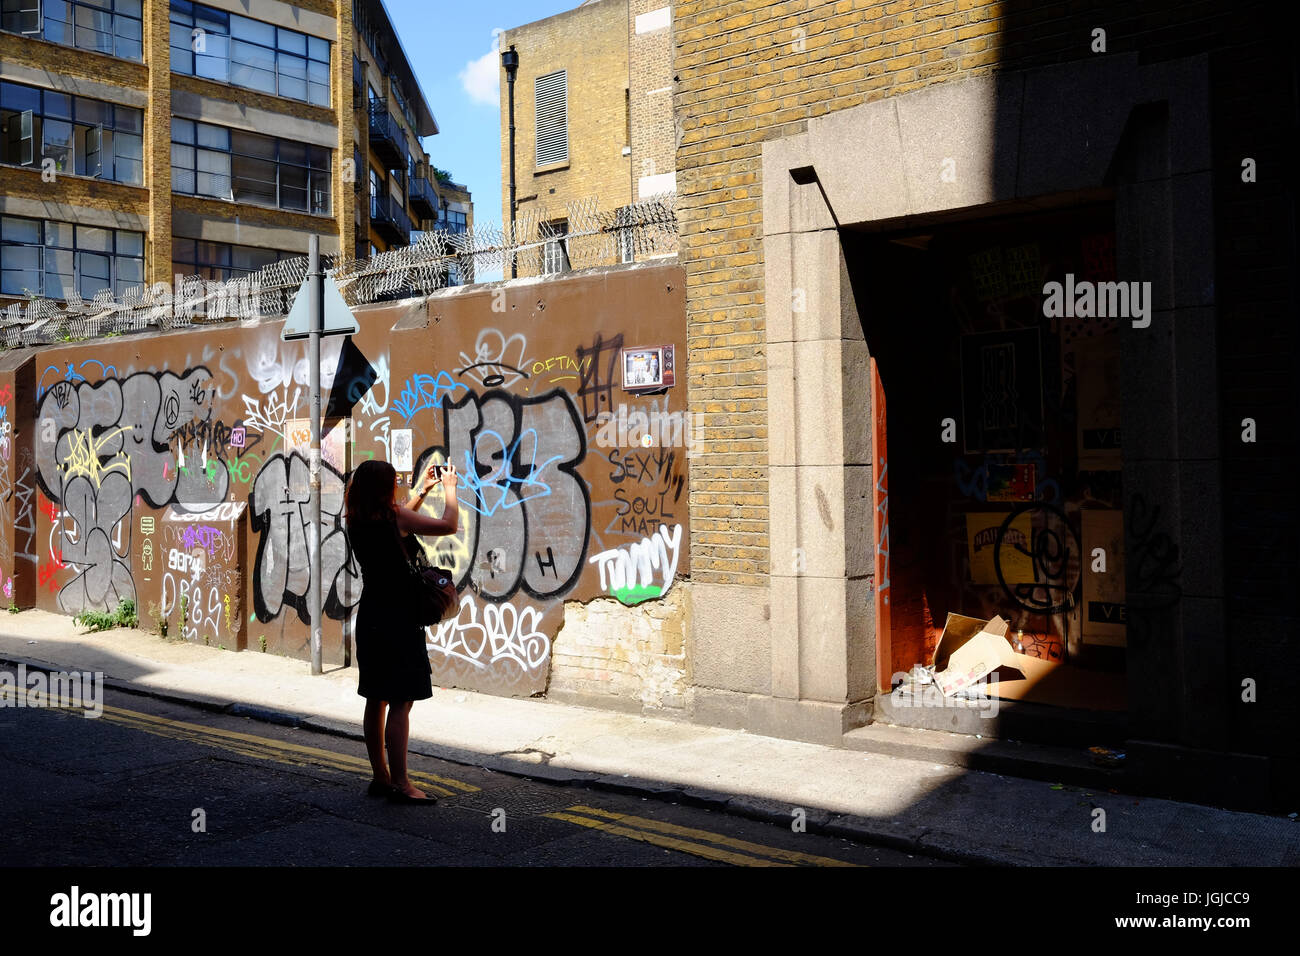 Persona prendendo fotografie dei graffiti in Corbet posto vicino a Brick Lane, Shoreditch, London E1, utilizzando il suo smartphone Foto Stock